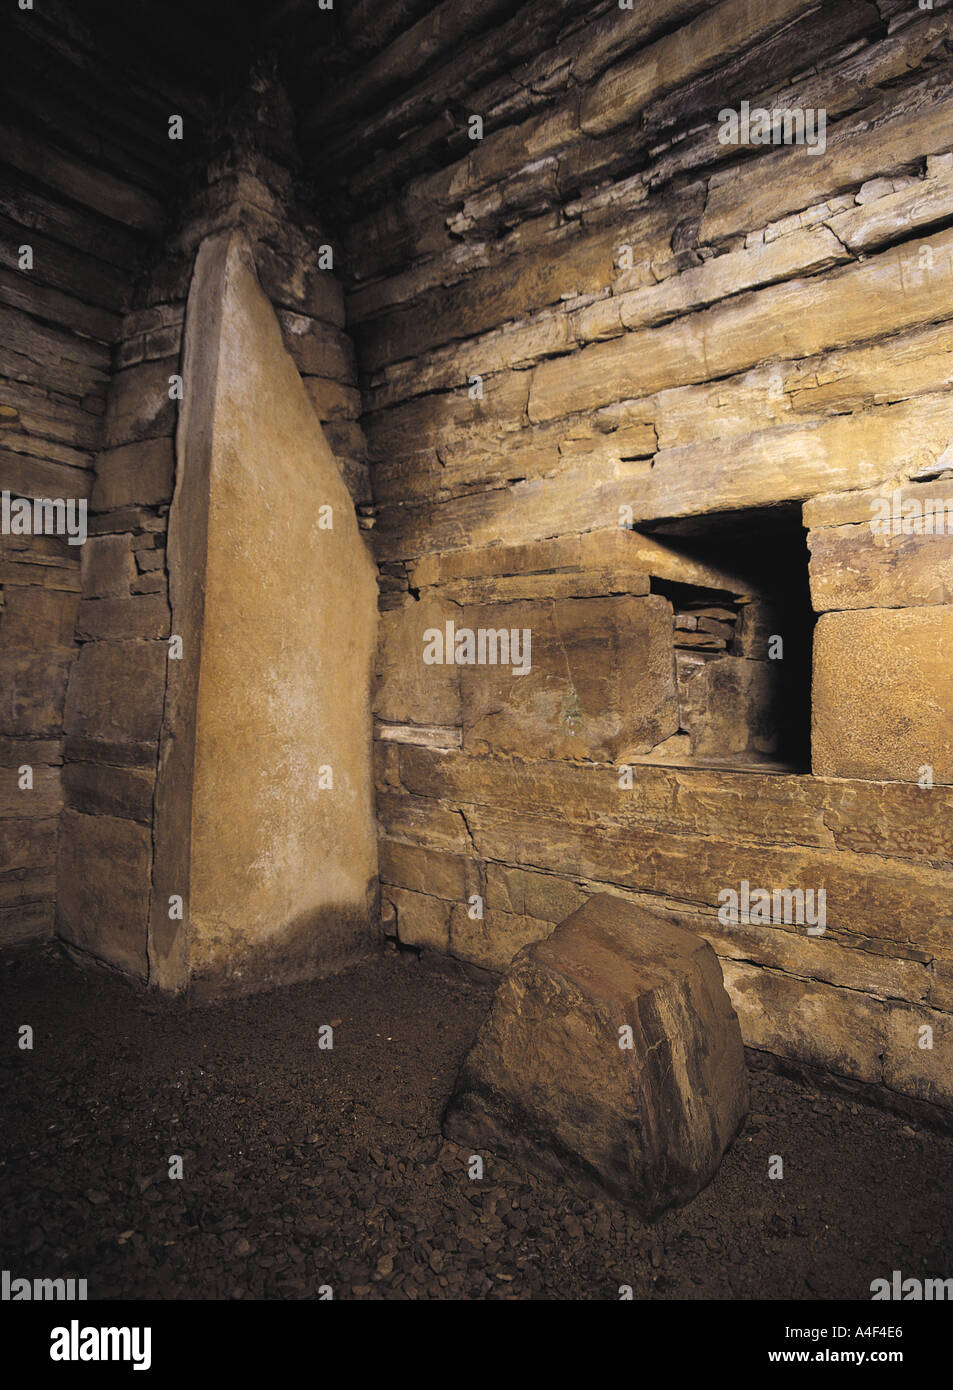 Dh sepoltura camera MAESHOWE ORKNEY tomba neolitica pietra di blocco interno della camera di Scozia chambered cairn mound Foto Stock